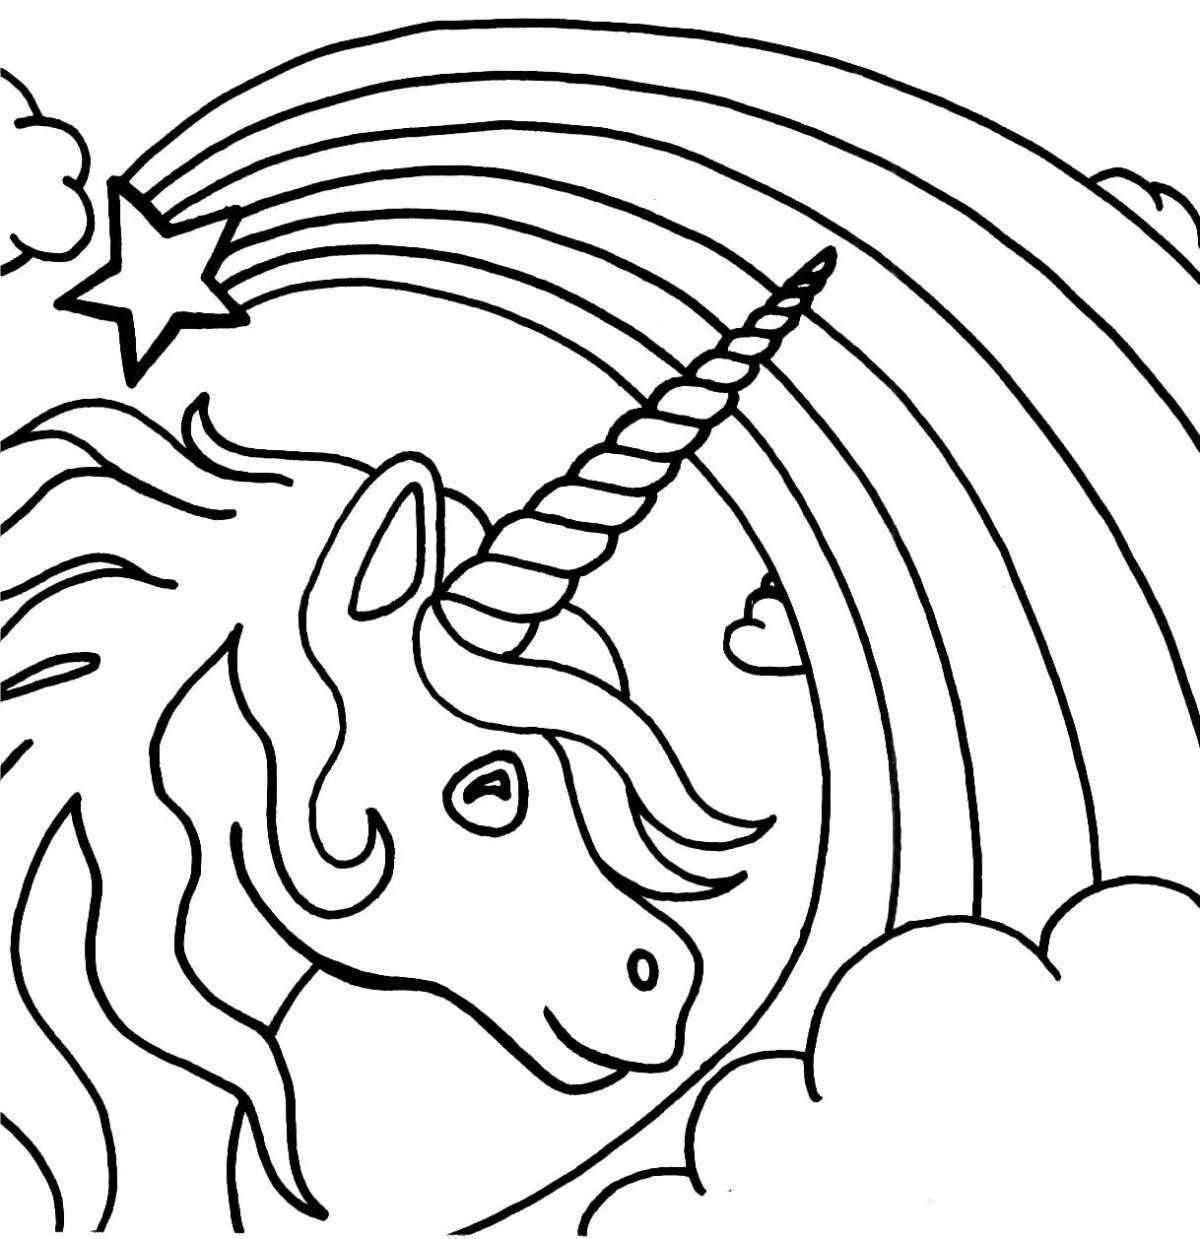 Royal coloring unicorn drawing